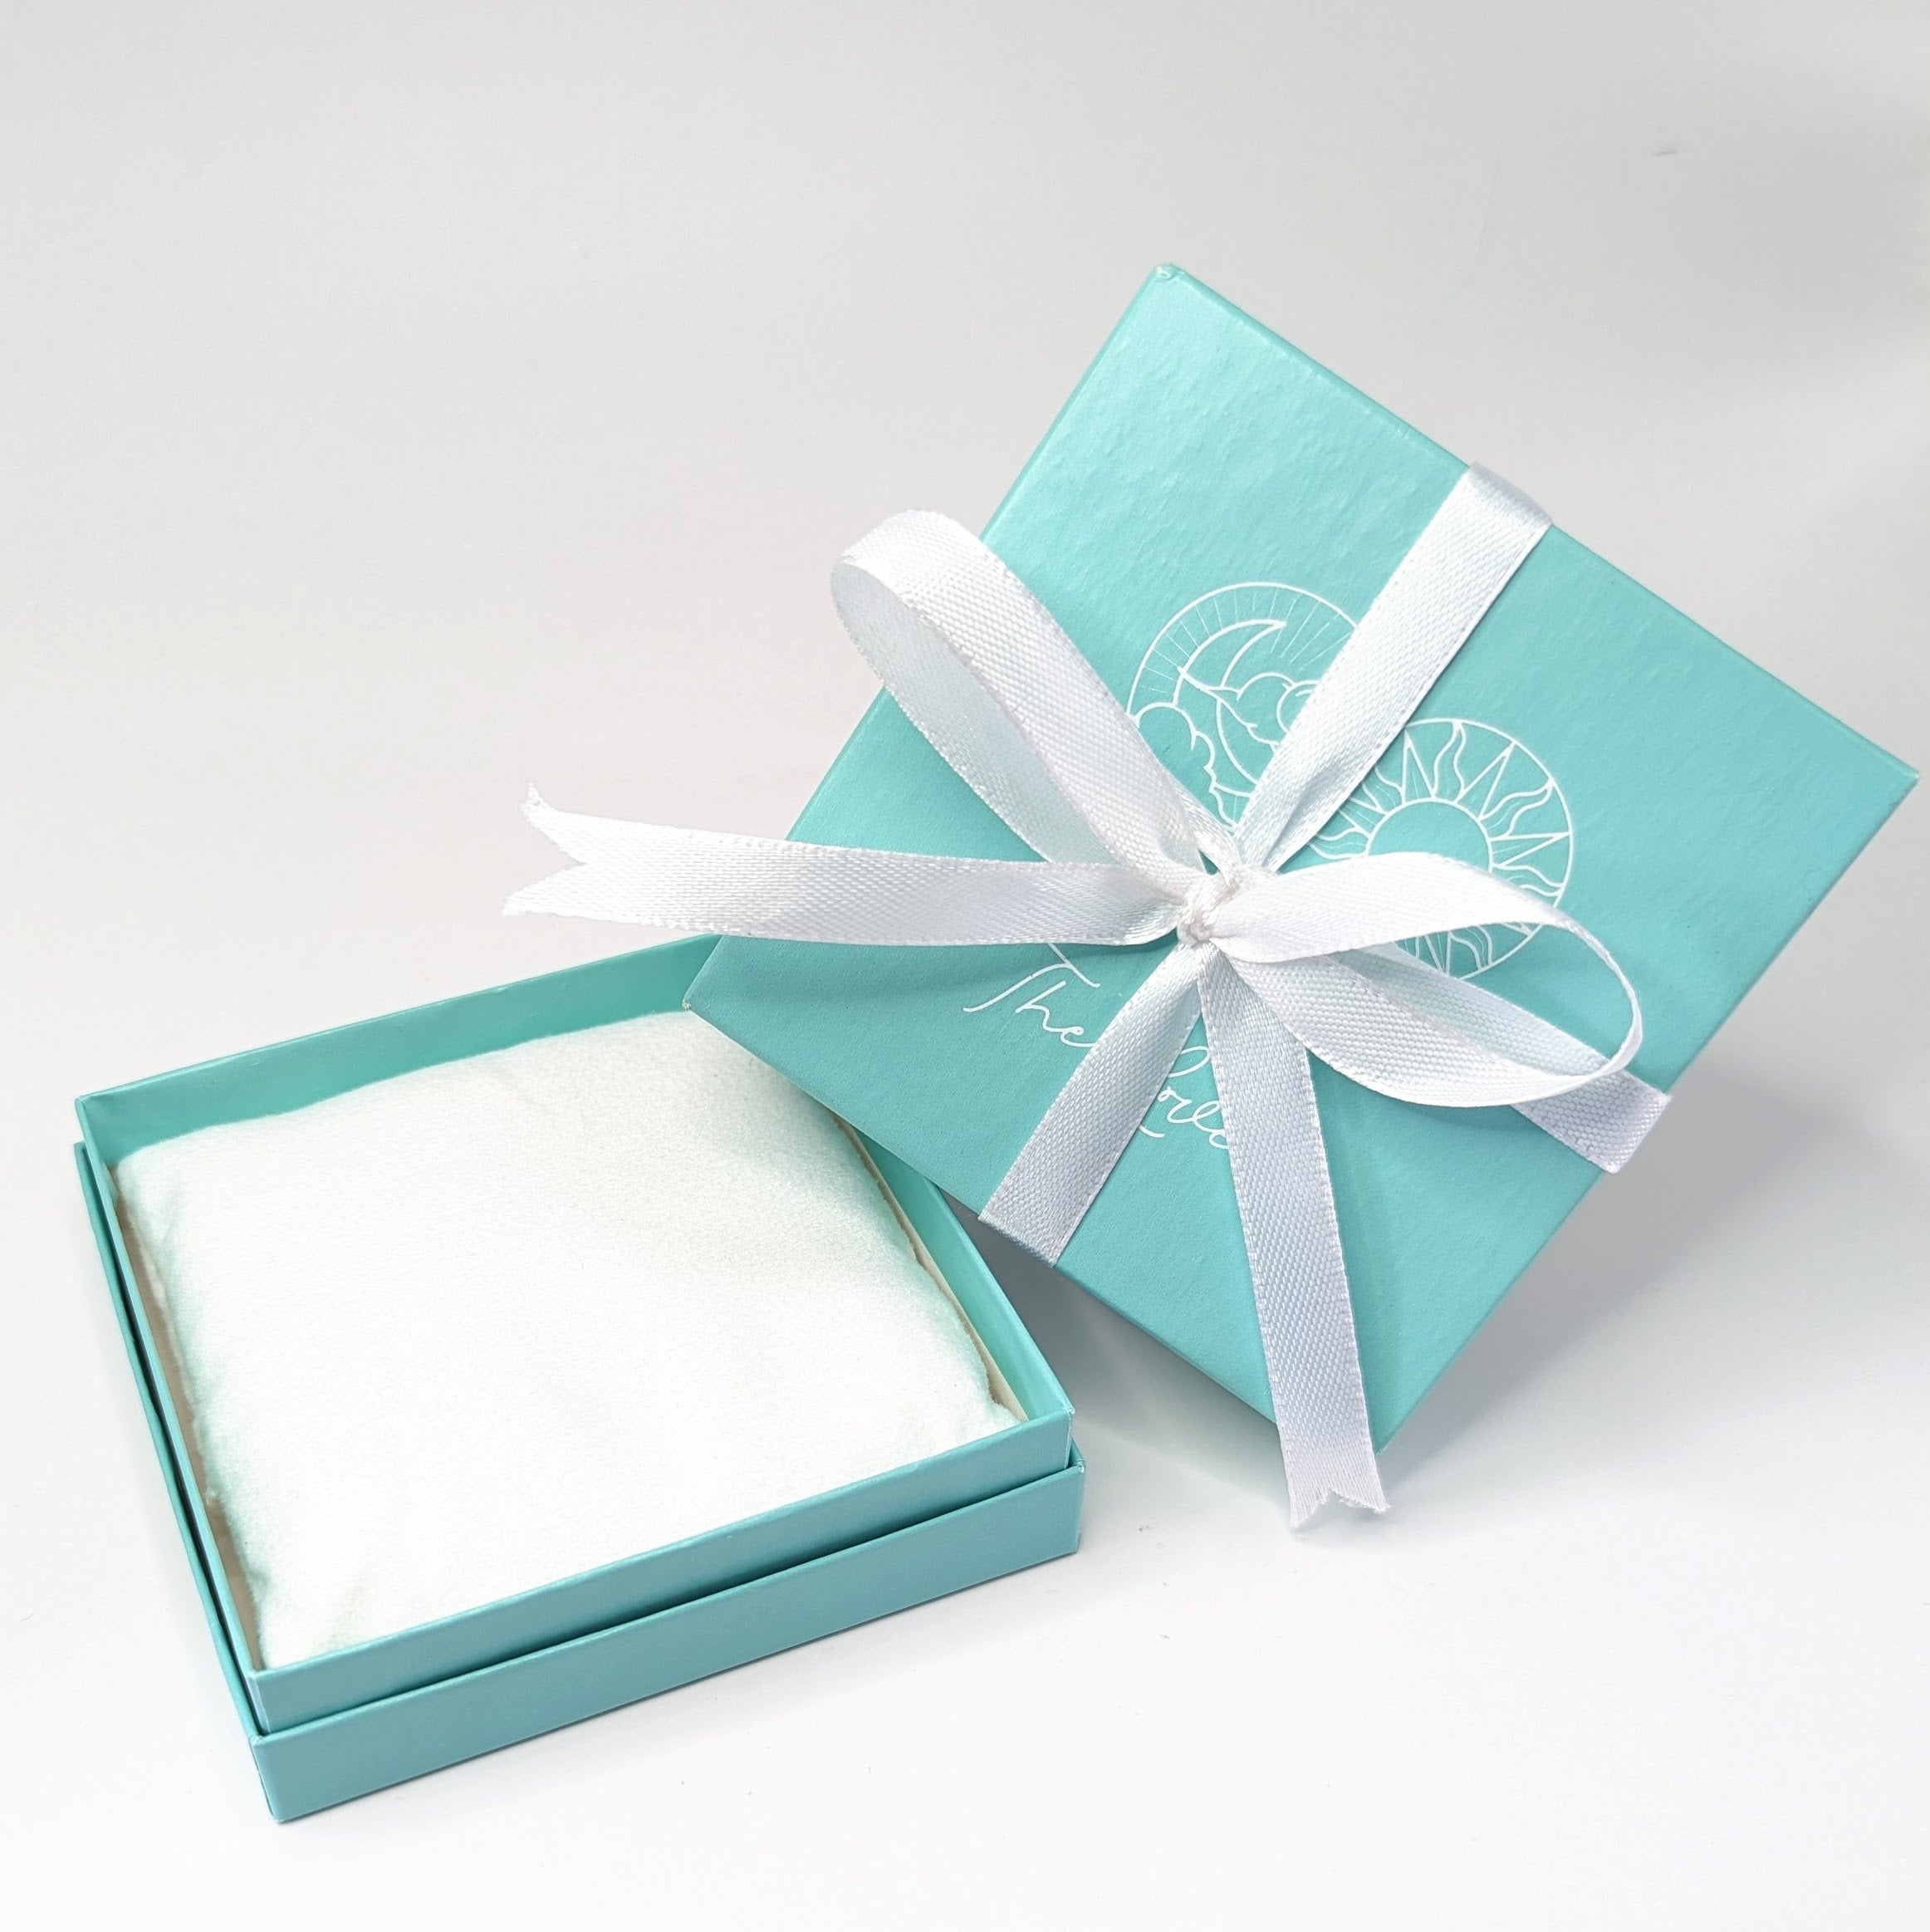 GOLD Necklace, Bangle & 'Heal Me' Crystal Charm Bracelet Gift Set